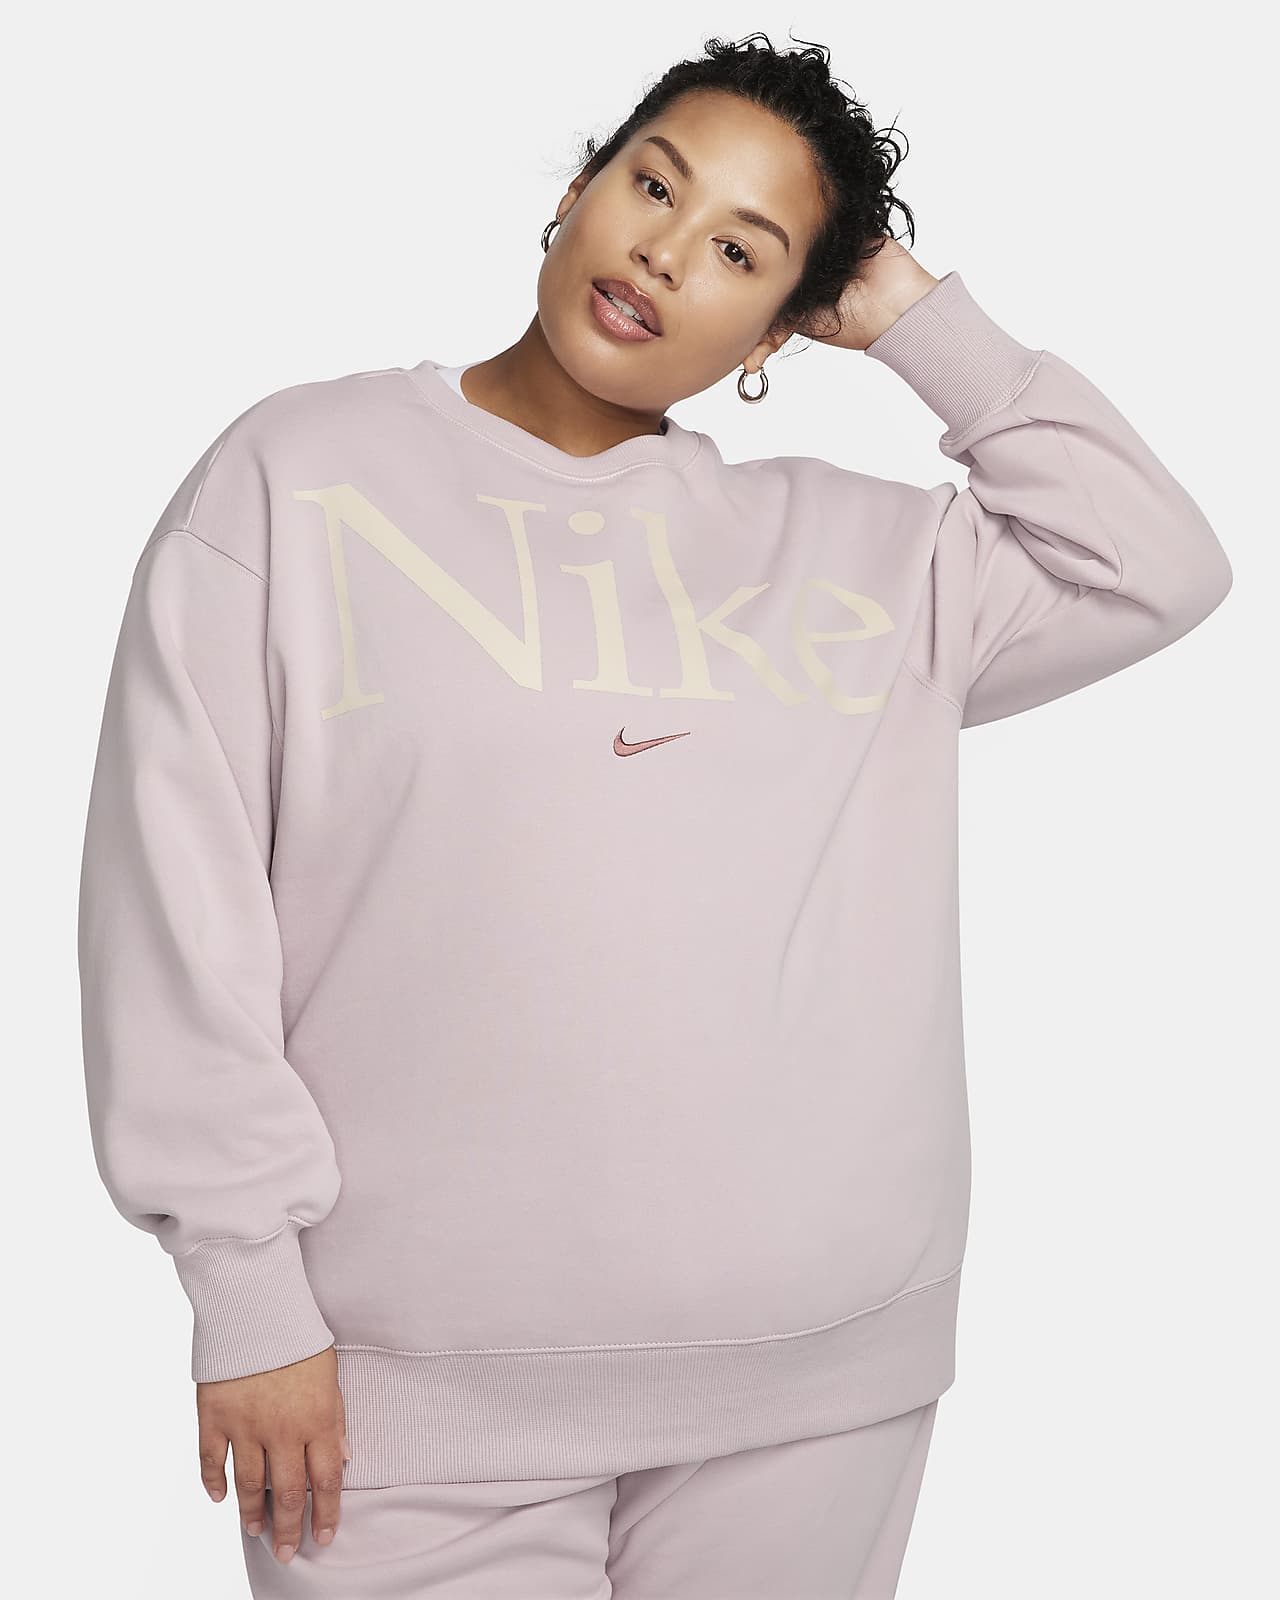 Nike Sportswear Women's Oversized Fleece Crew-Neck Sweatshirt